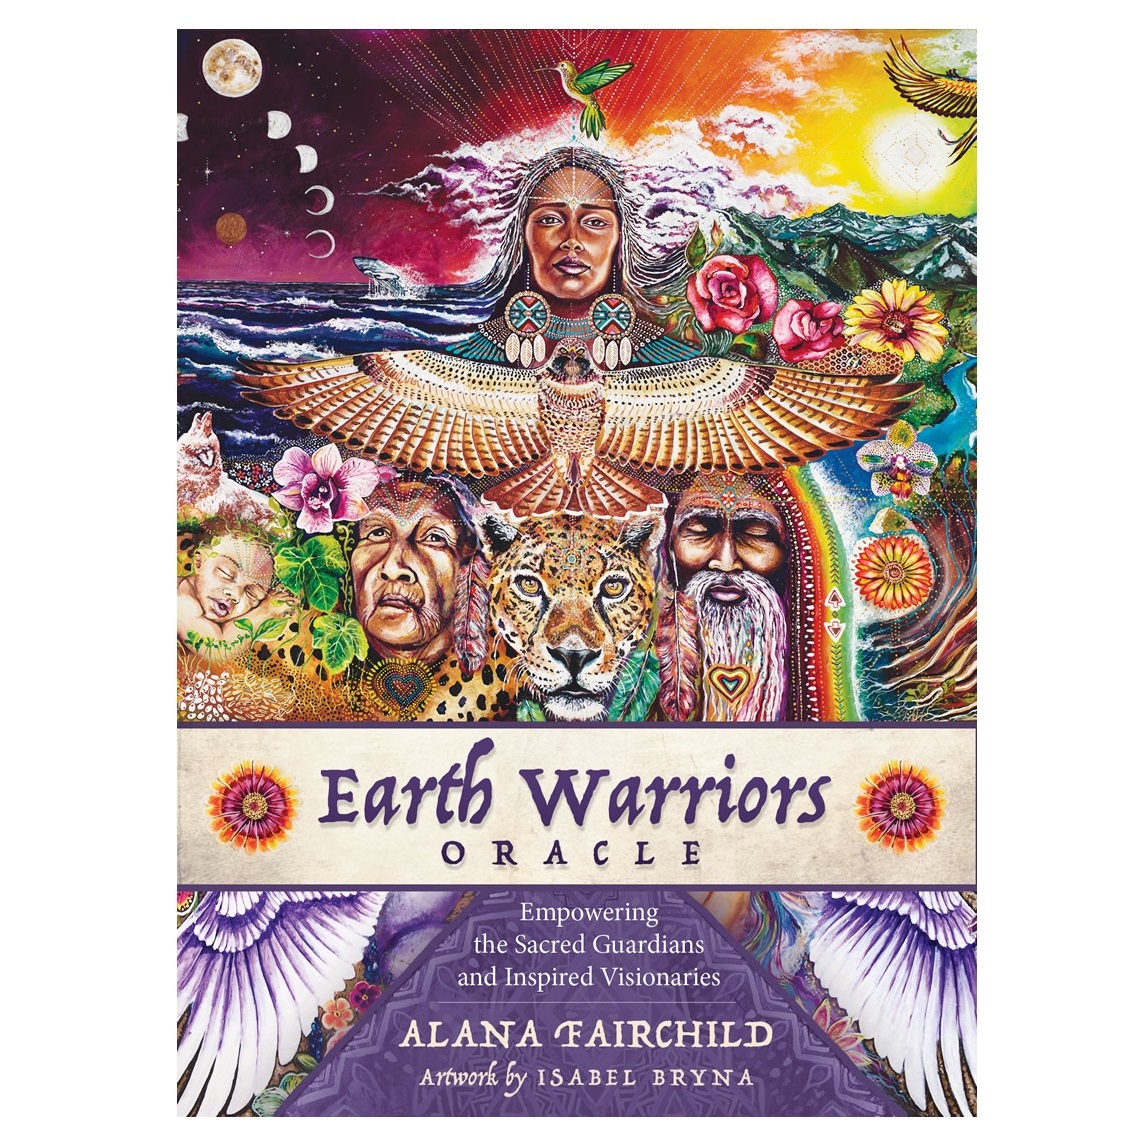 

Оракул "Воины Земли" (Earth Warriors Oracle), новое издание